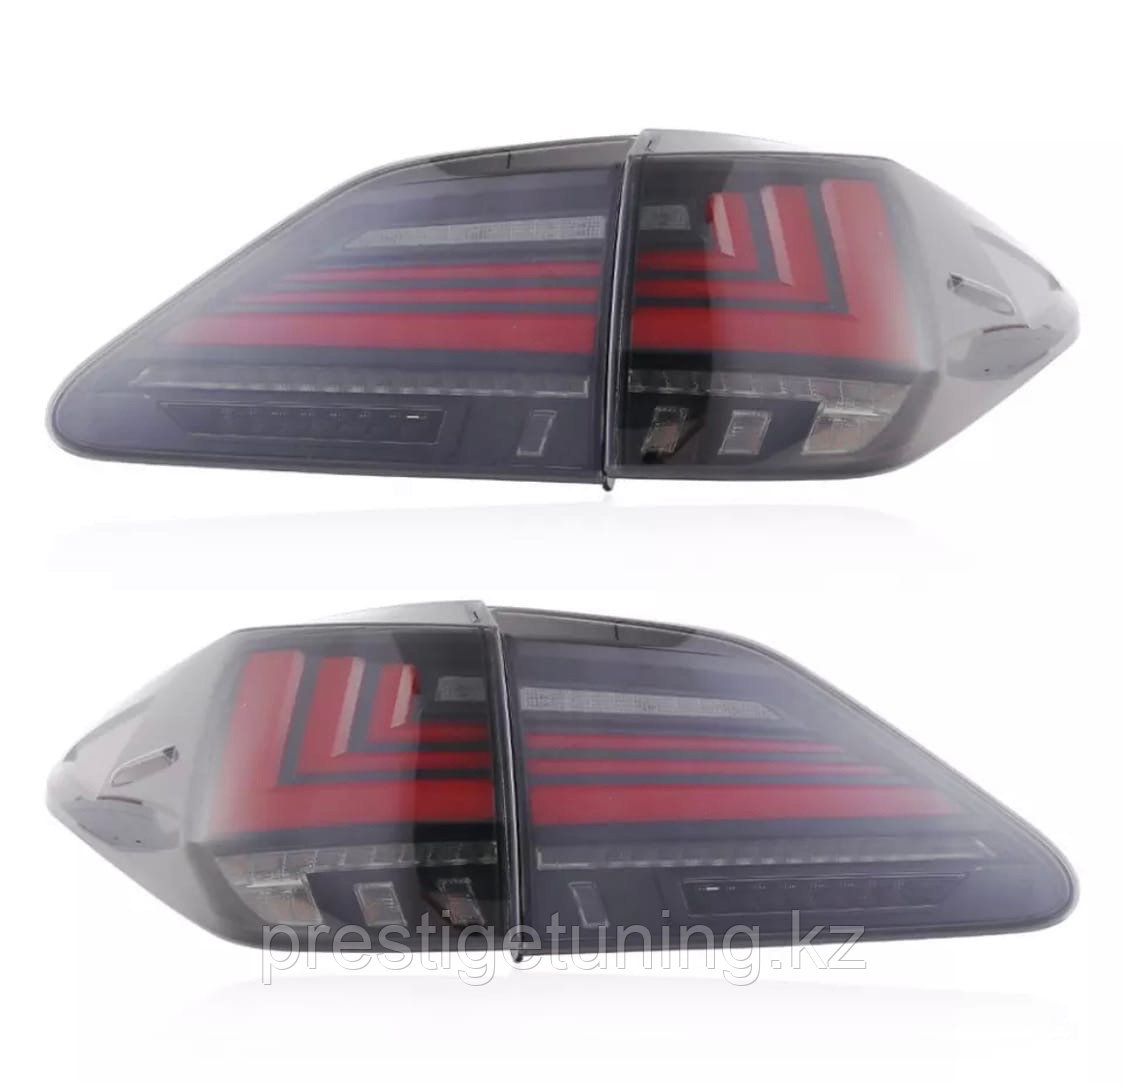 Задние фонари на Lexus RX 2009-15 дизайн 2021 (Красные), фото 1